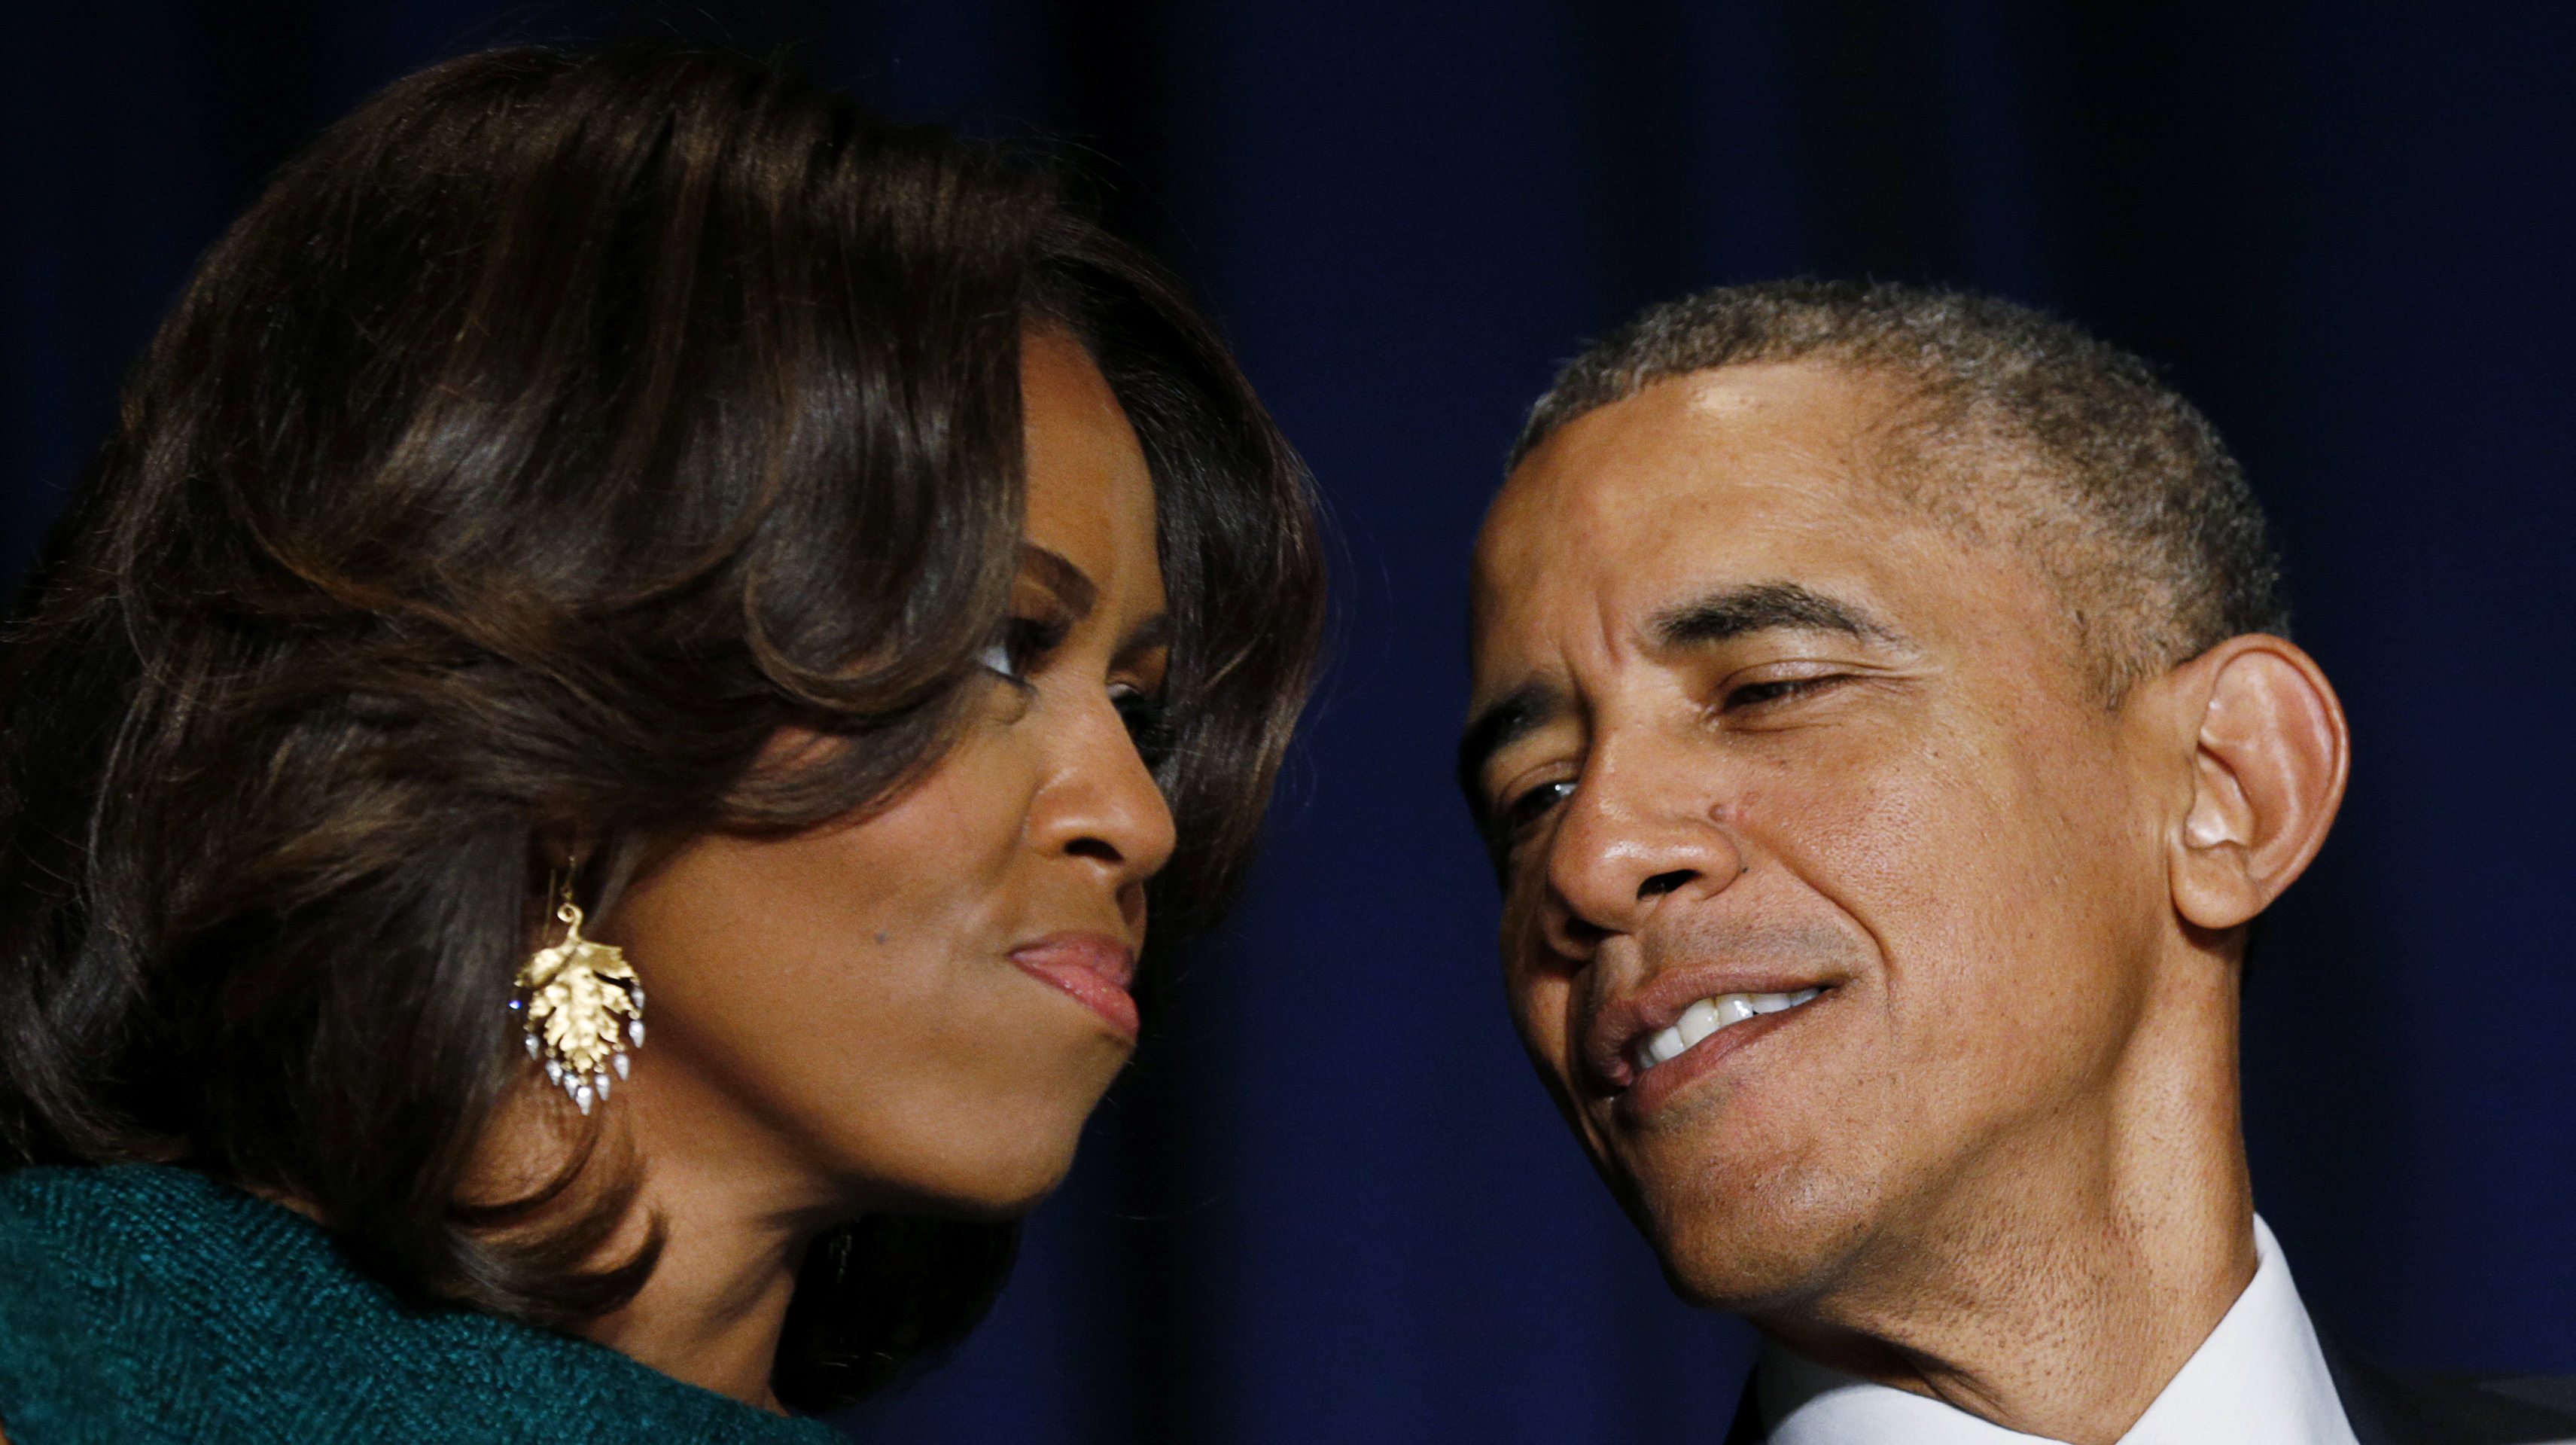 No te pierdas a Obama y su esposa vacilándose un concierto de Beyonce y Jay Z (Video)